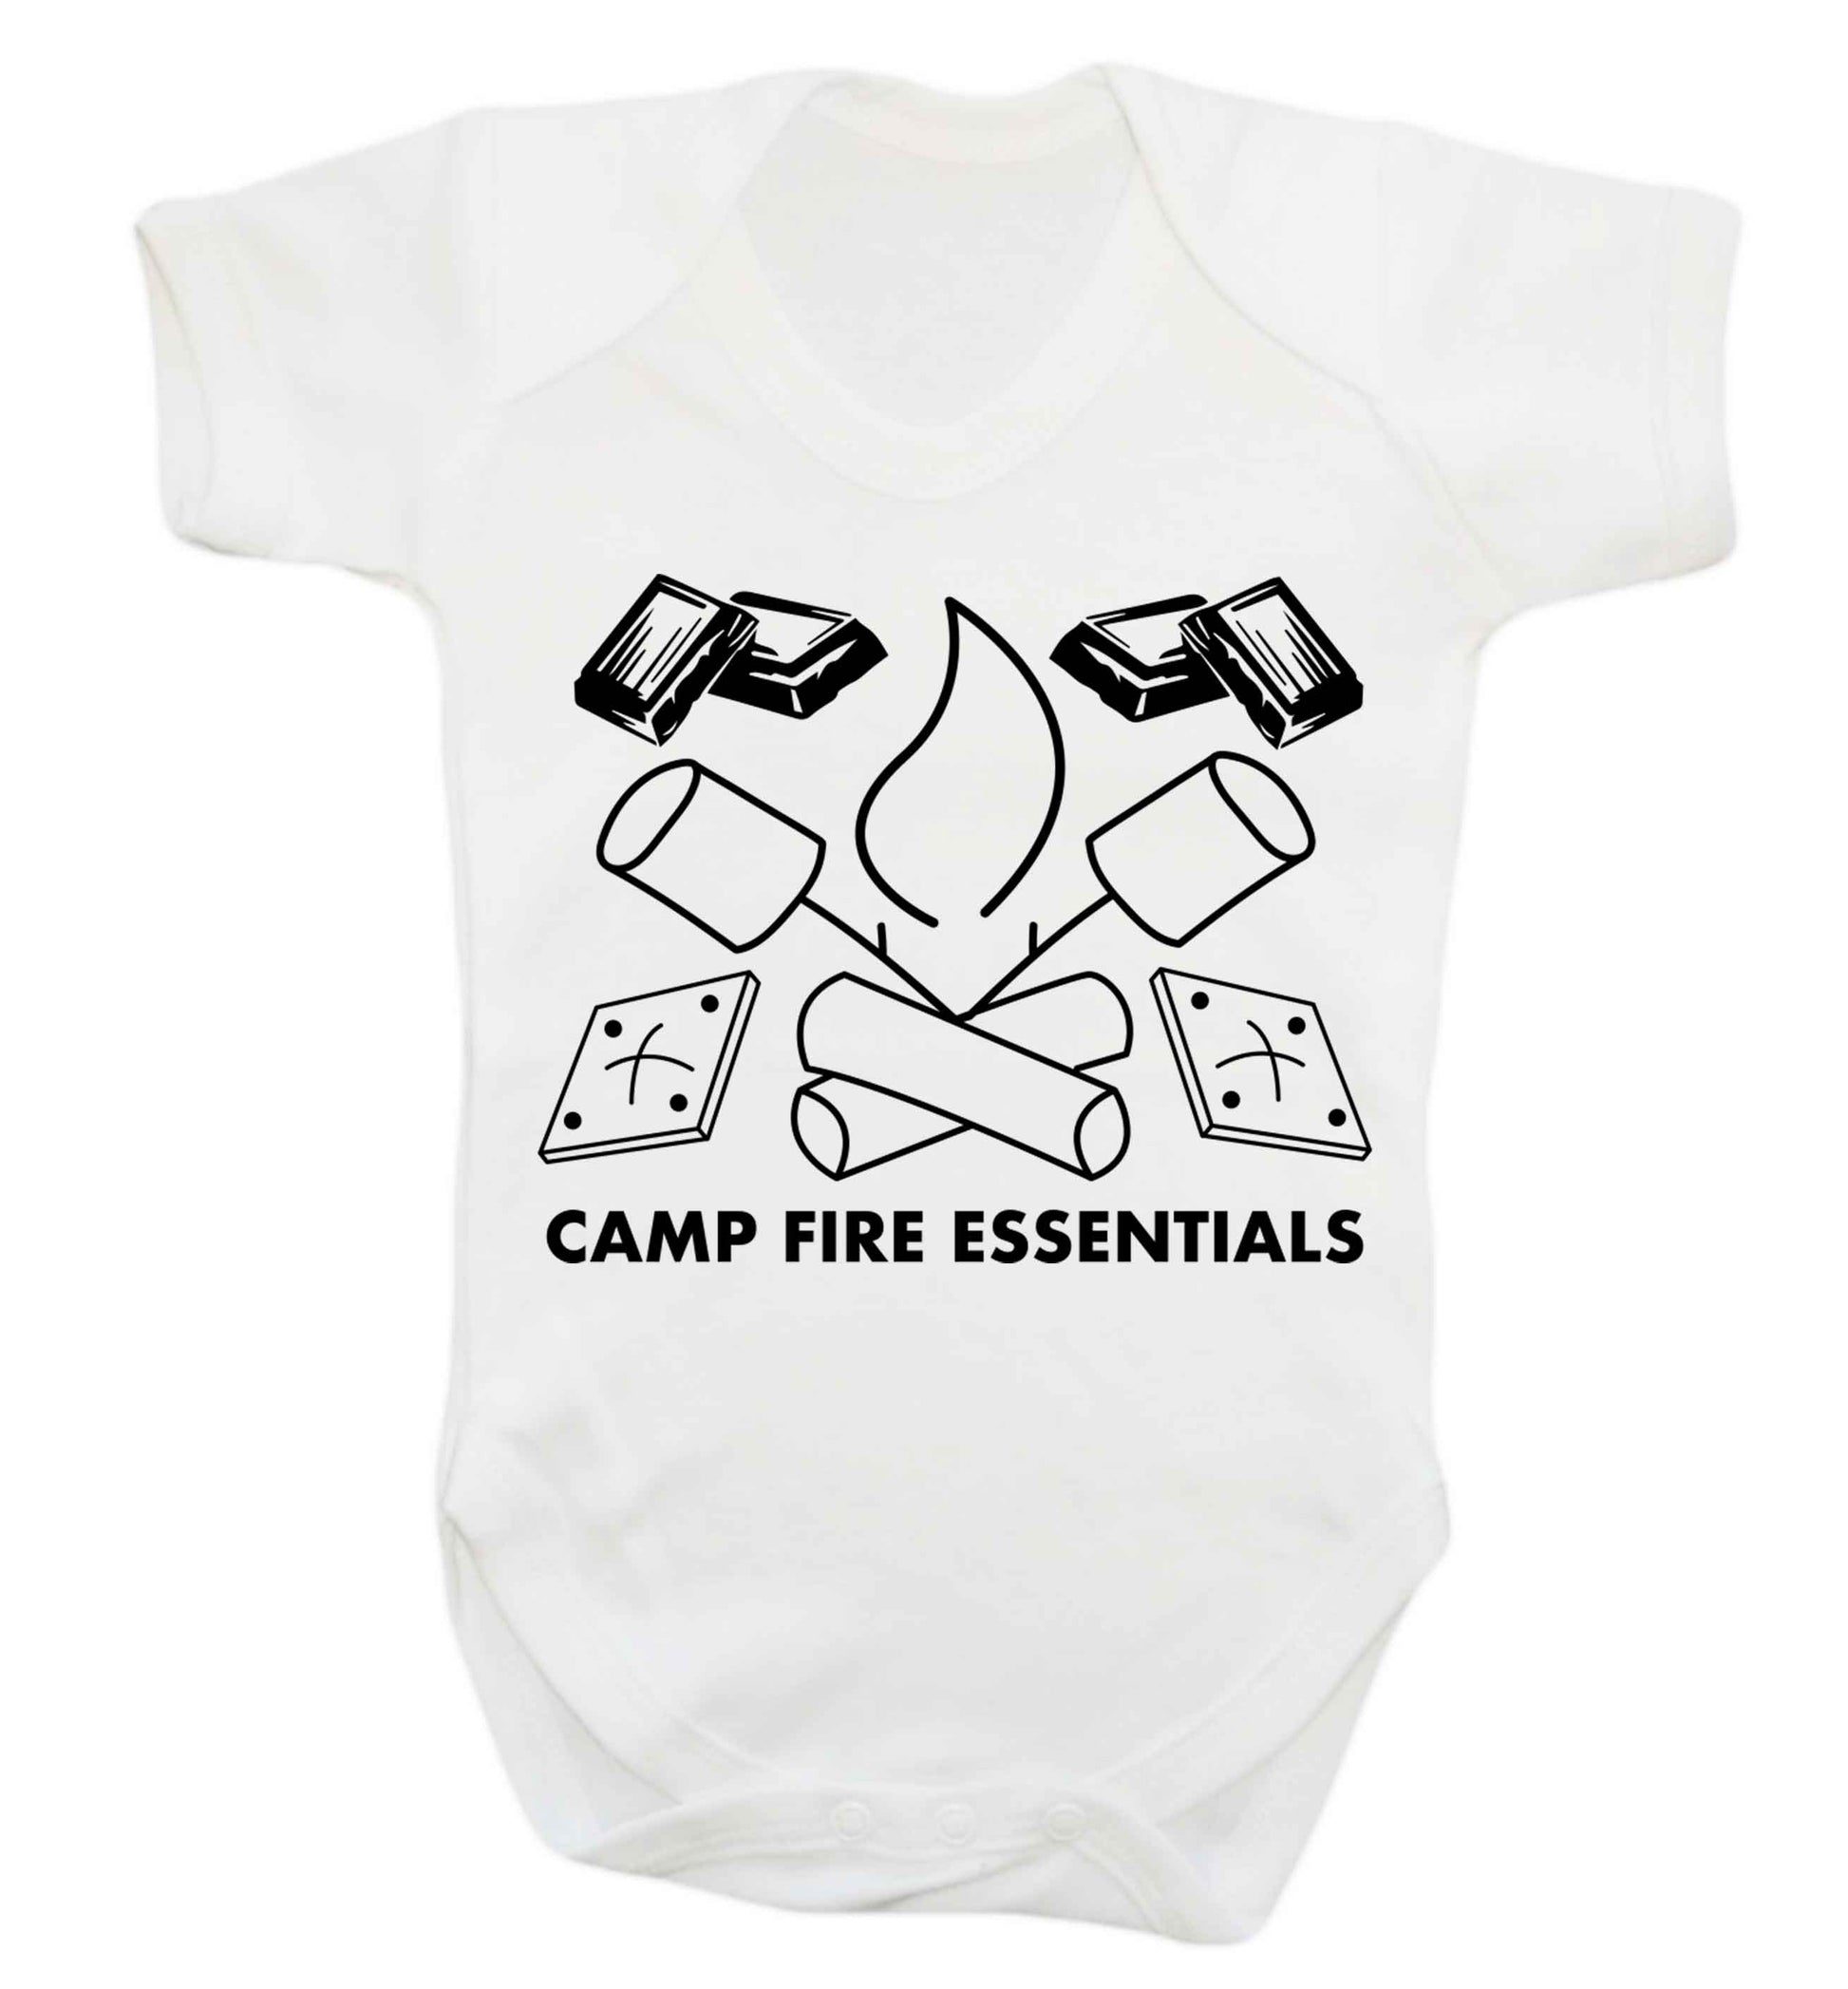 Campfire essentials Baby Vest white 18-24 months